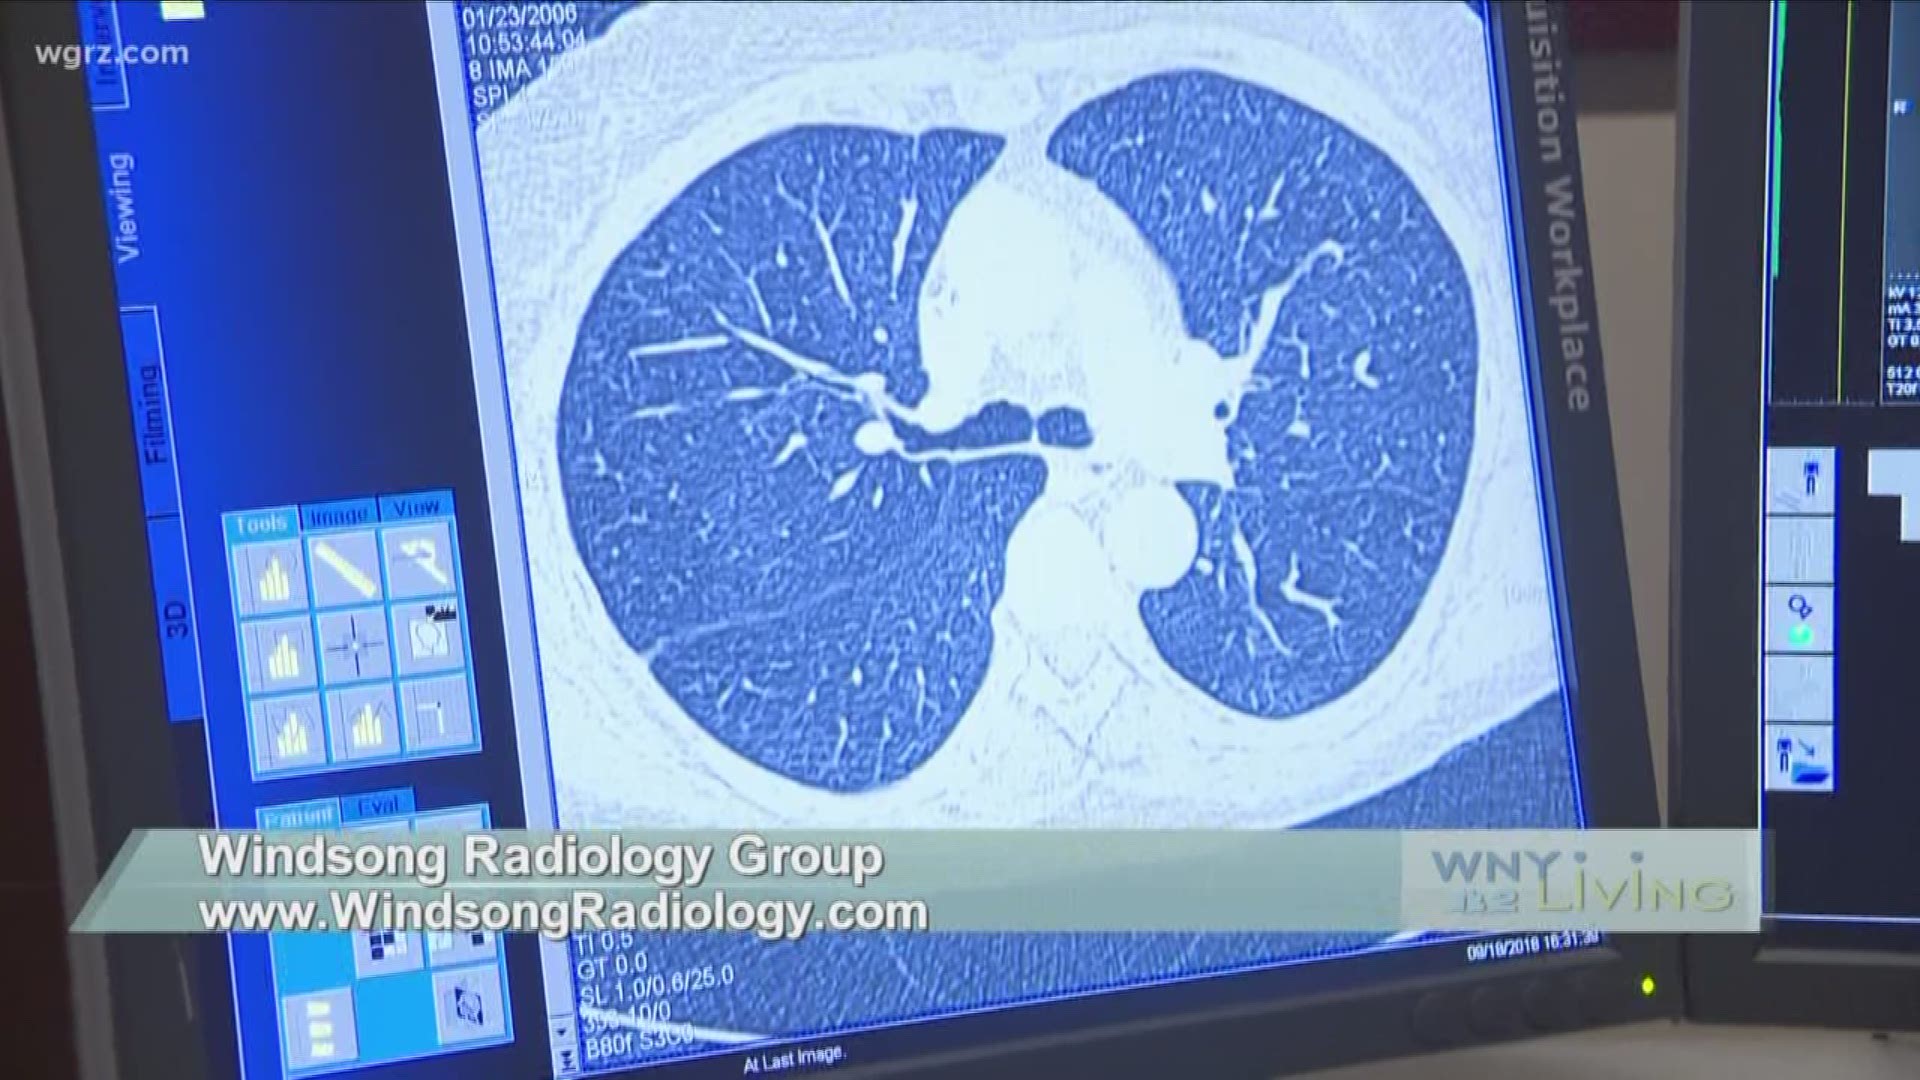 September 22 - Windsong Radiology